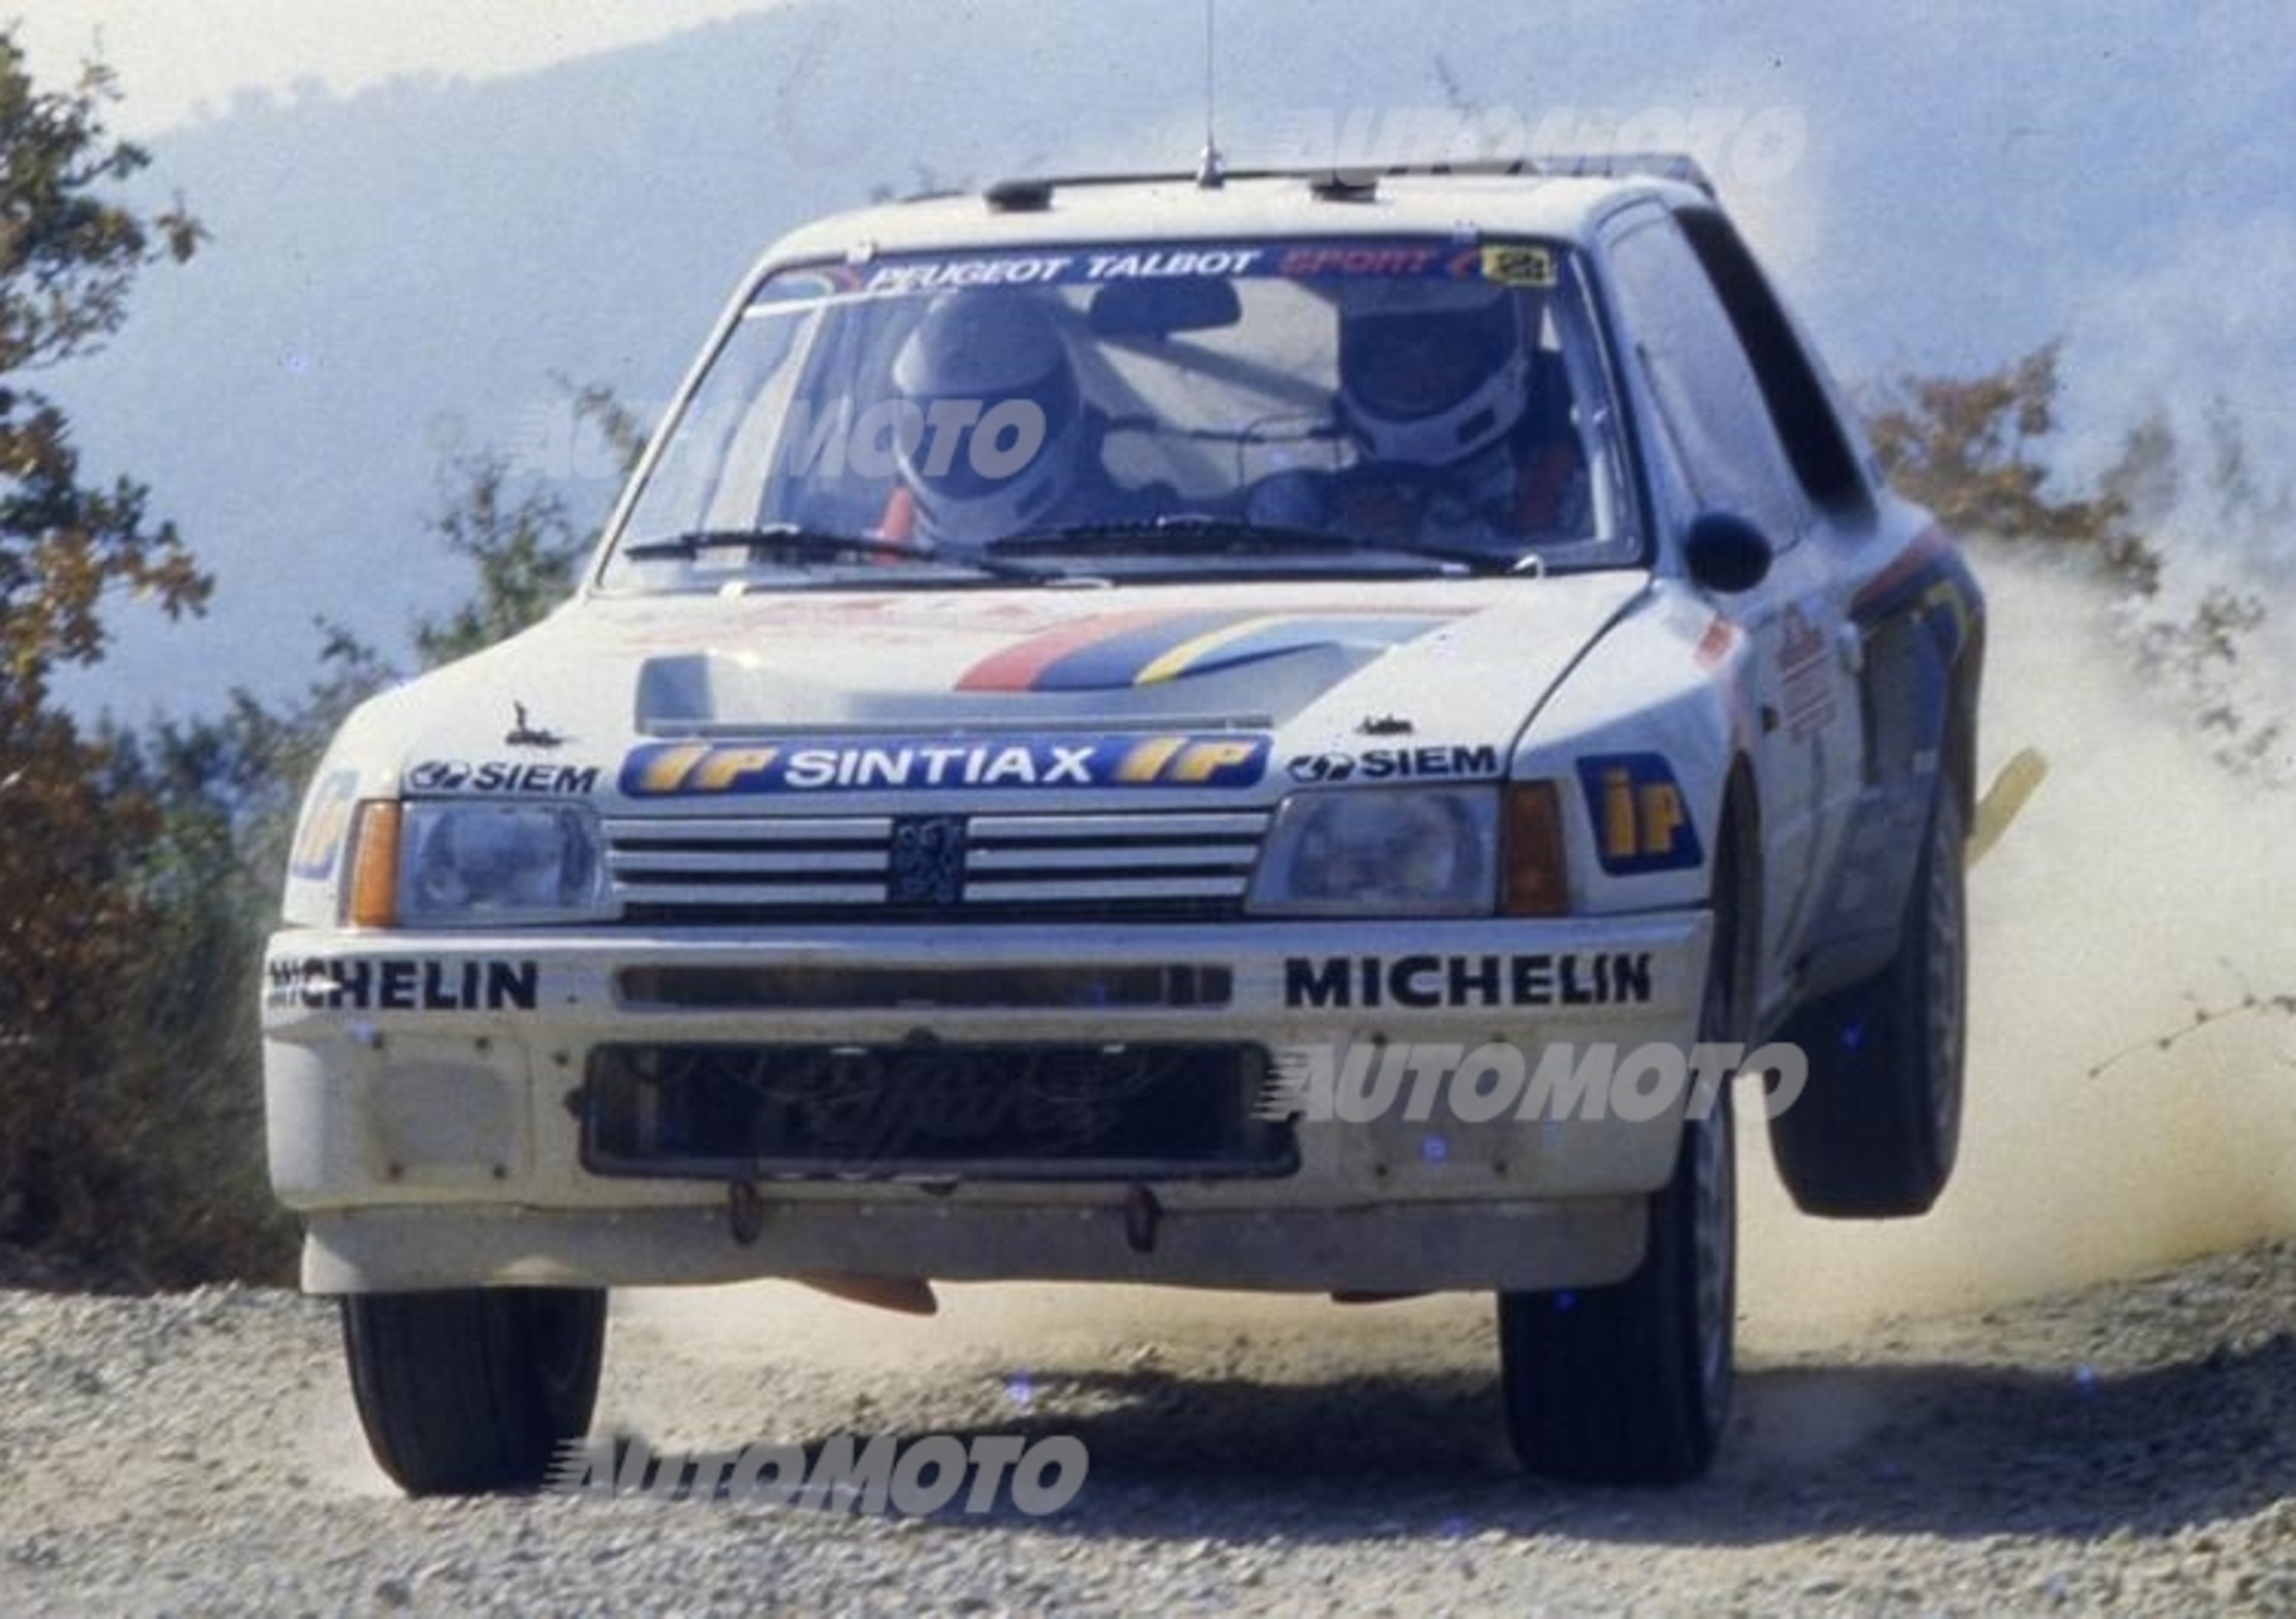 Peugeot 205 T16: 20 anni fa la prima vittoria in Italia. La storia